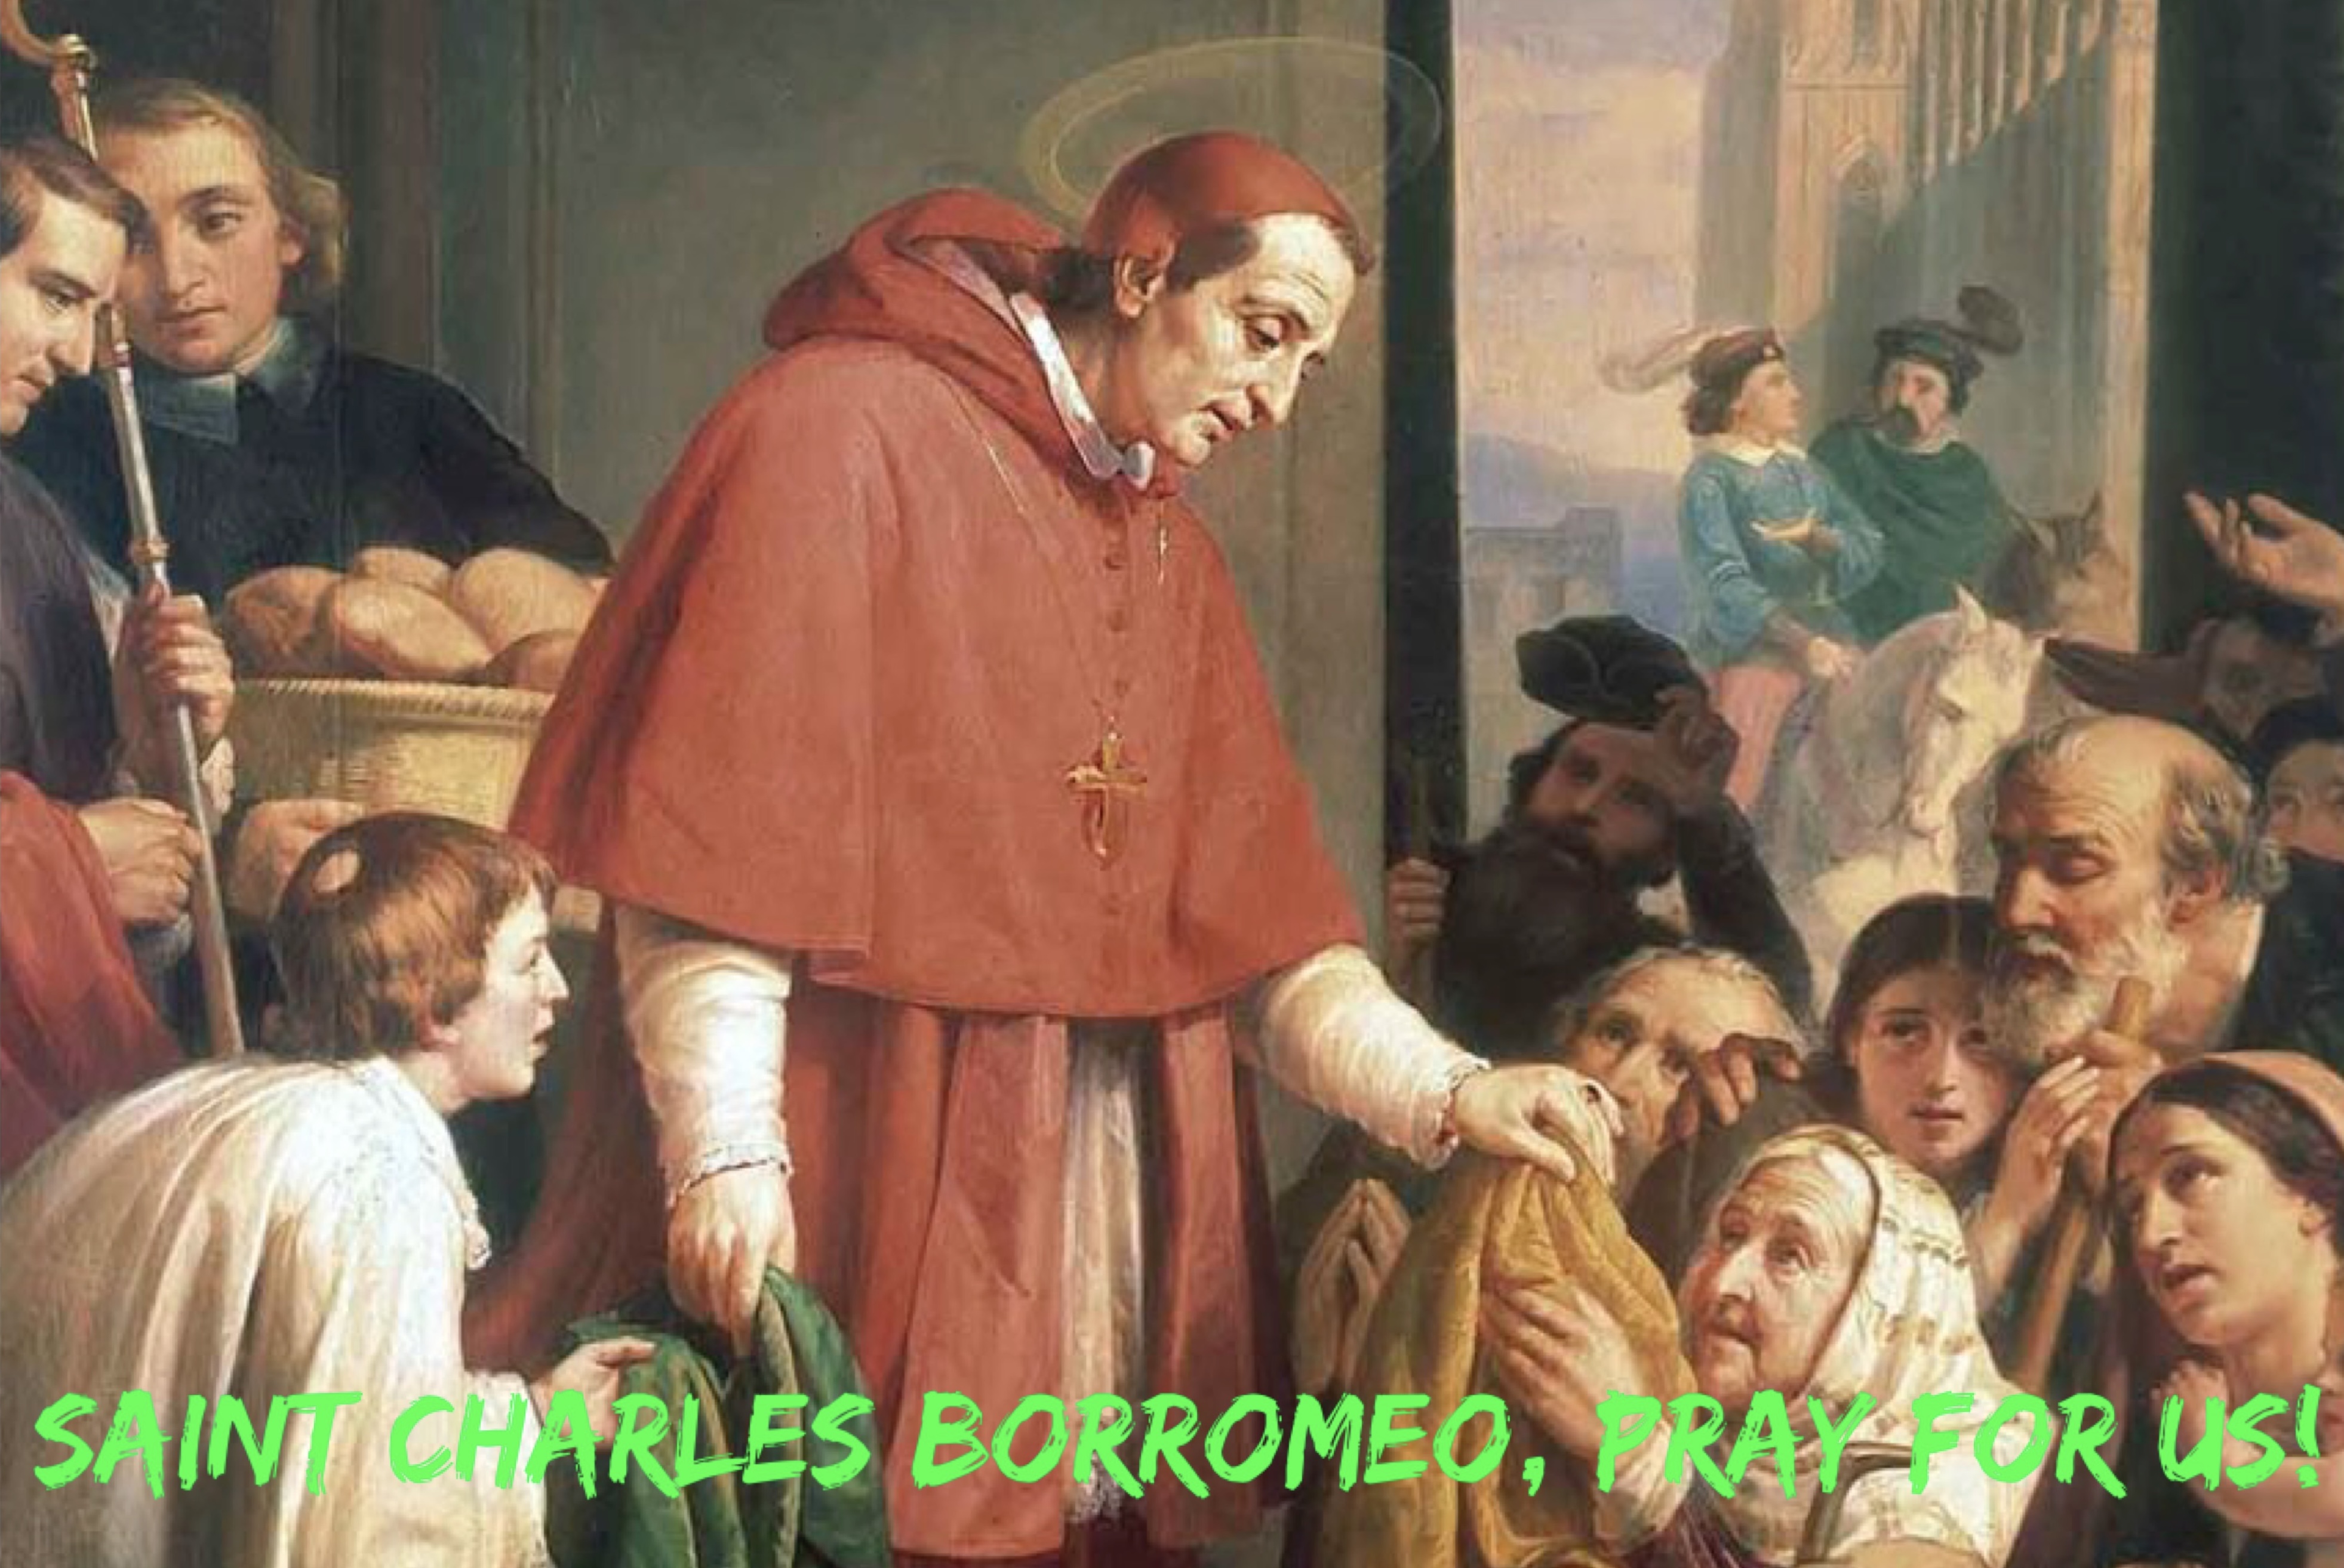 4th November - Saint Charles Borromeo